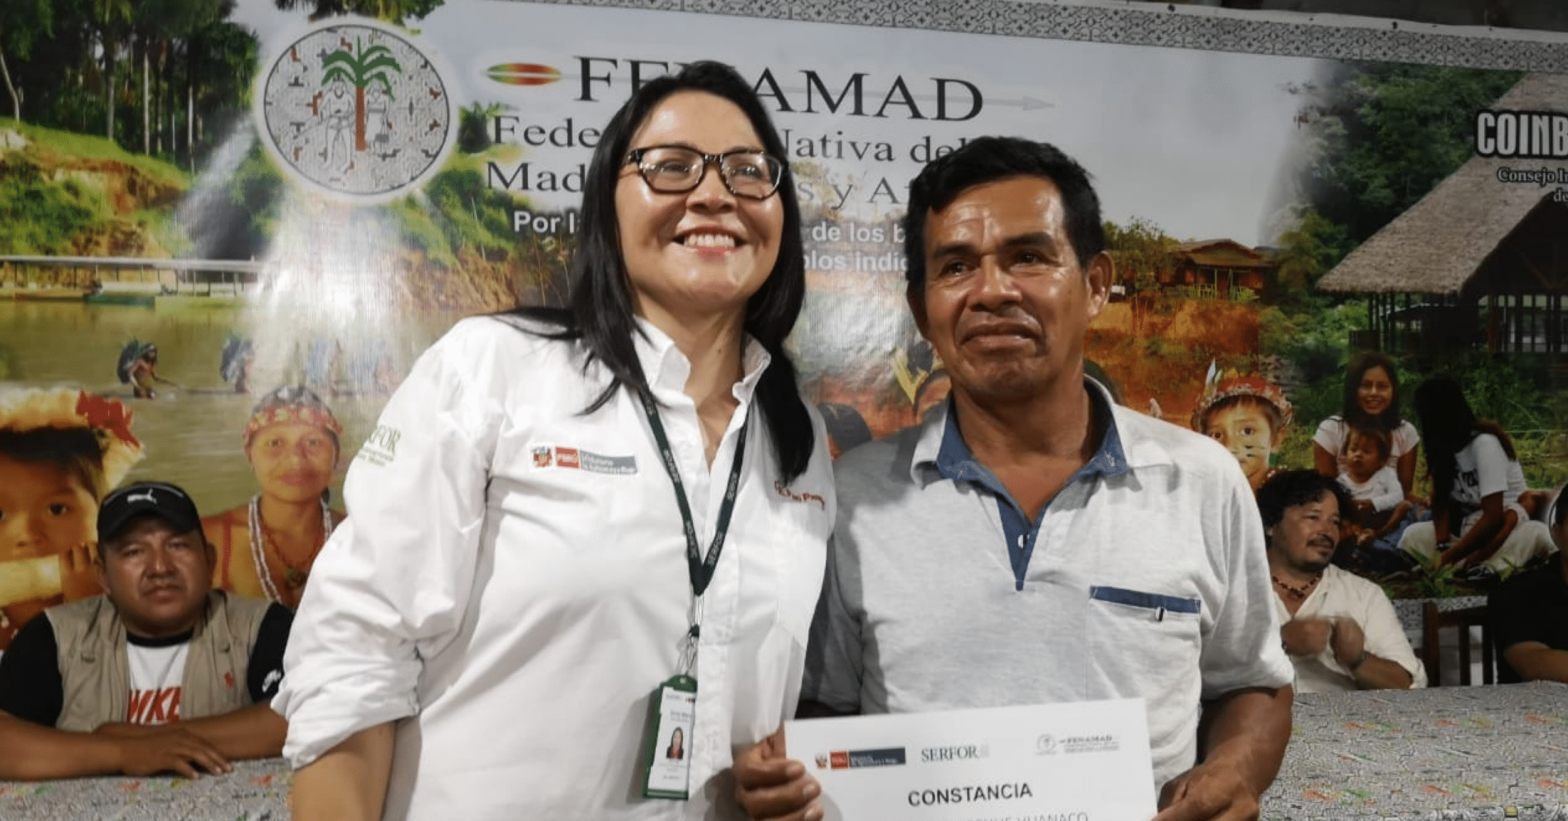 Reconocimiento a los participantes de las Comunidades Nativas de Ucayali, Perú. 2022 Créditos: Servicio Nacional Forestal y de Fauna Silvestre (SERFOR)